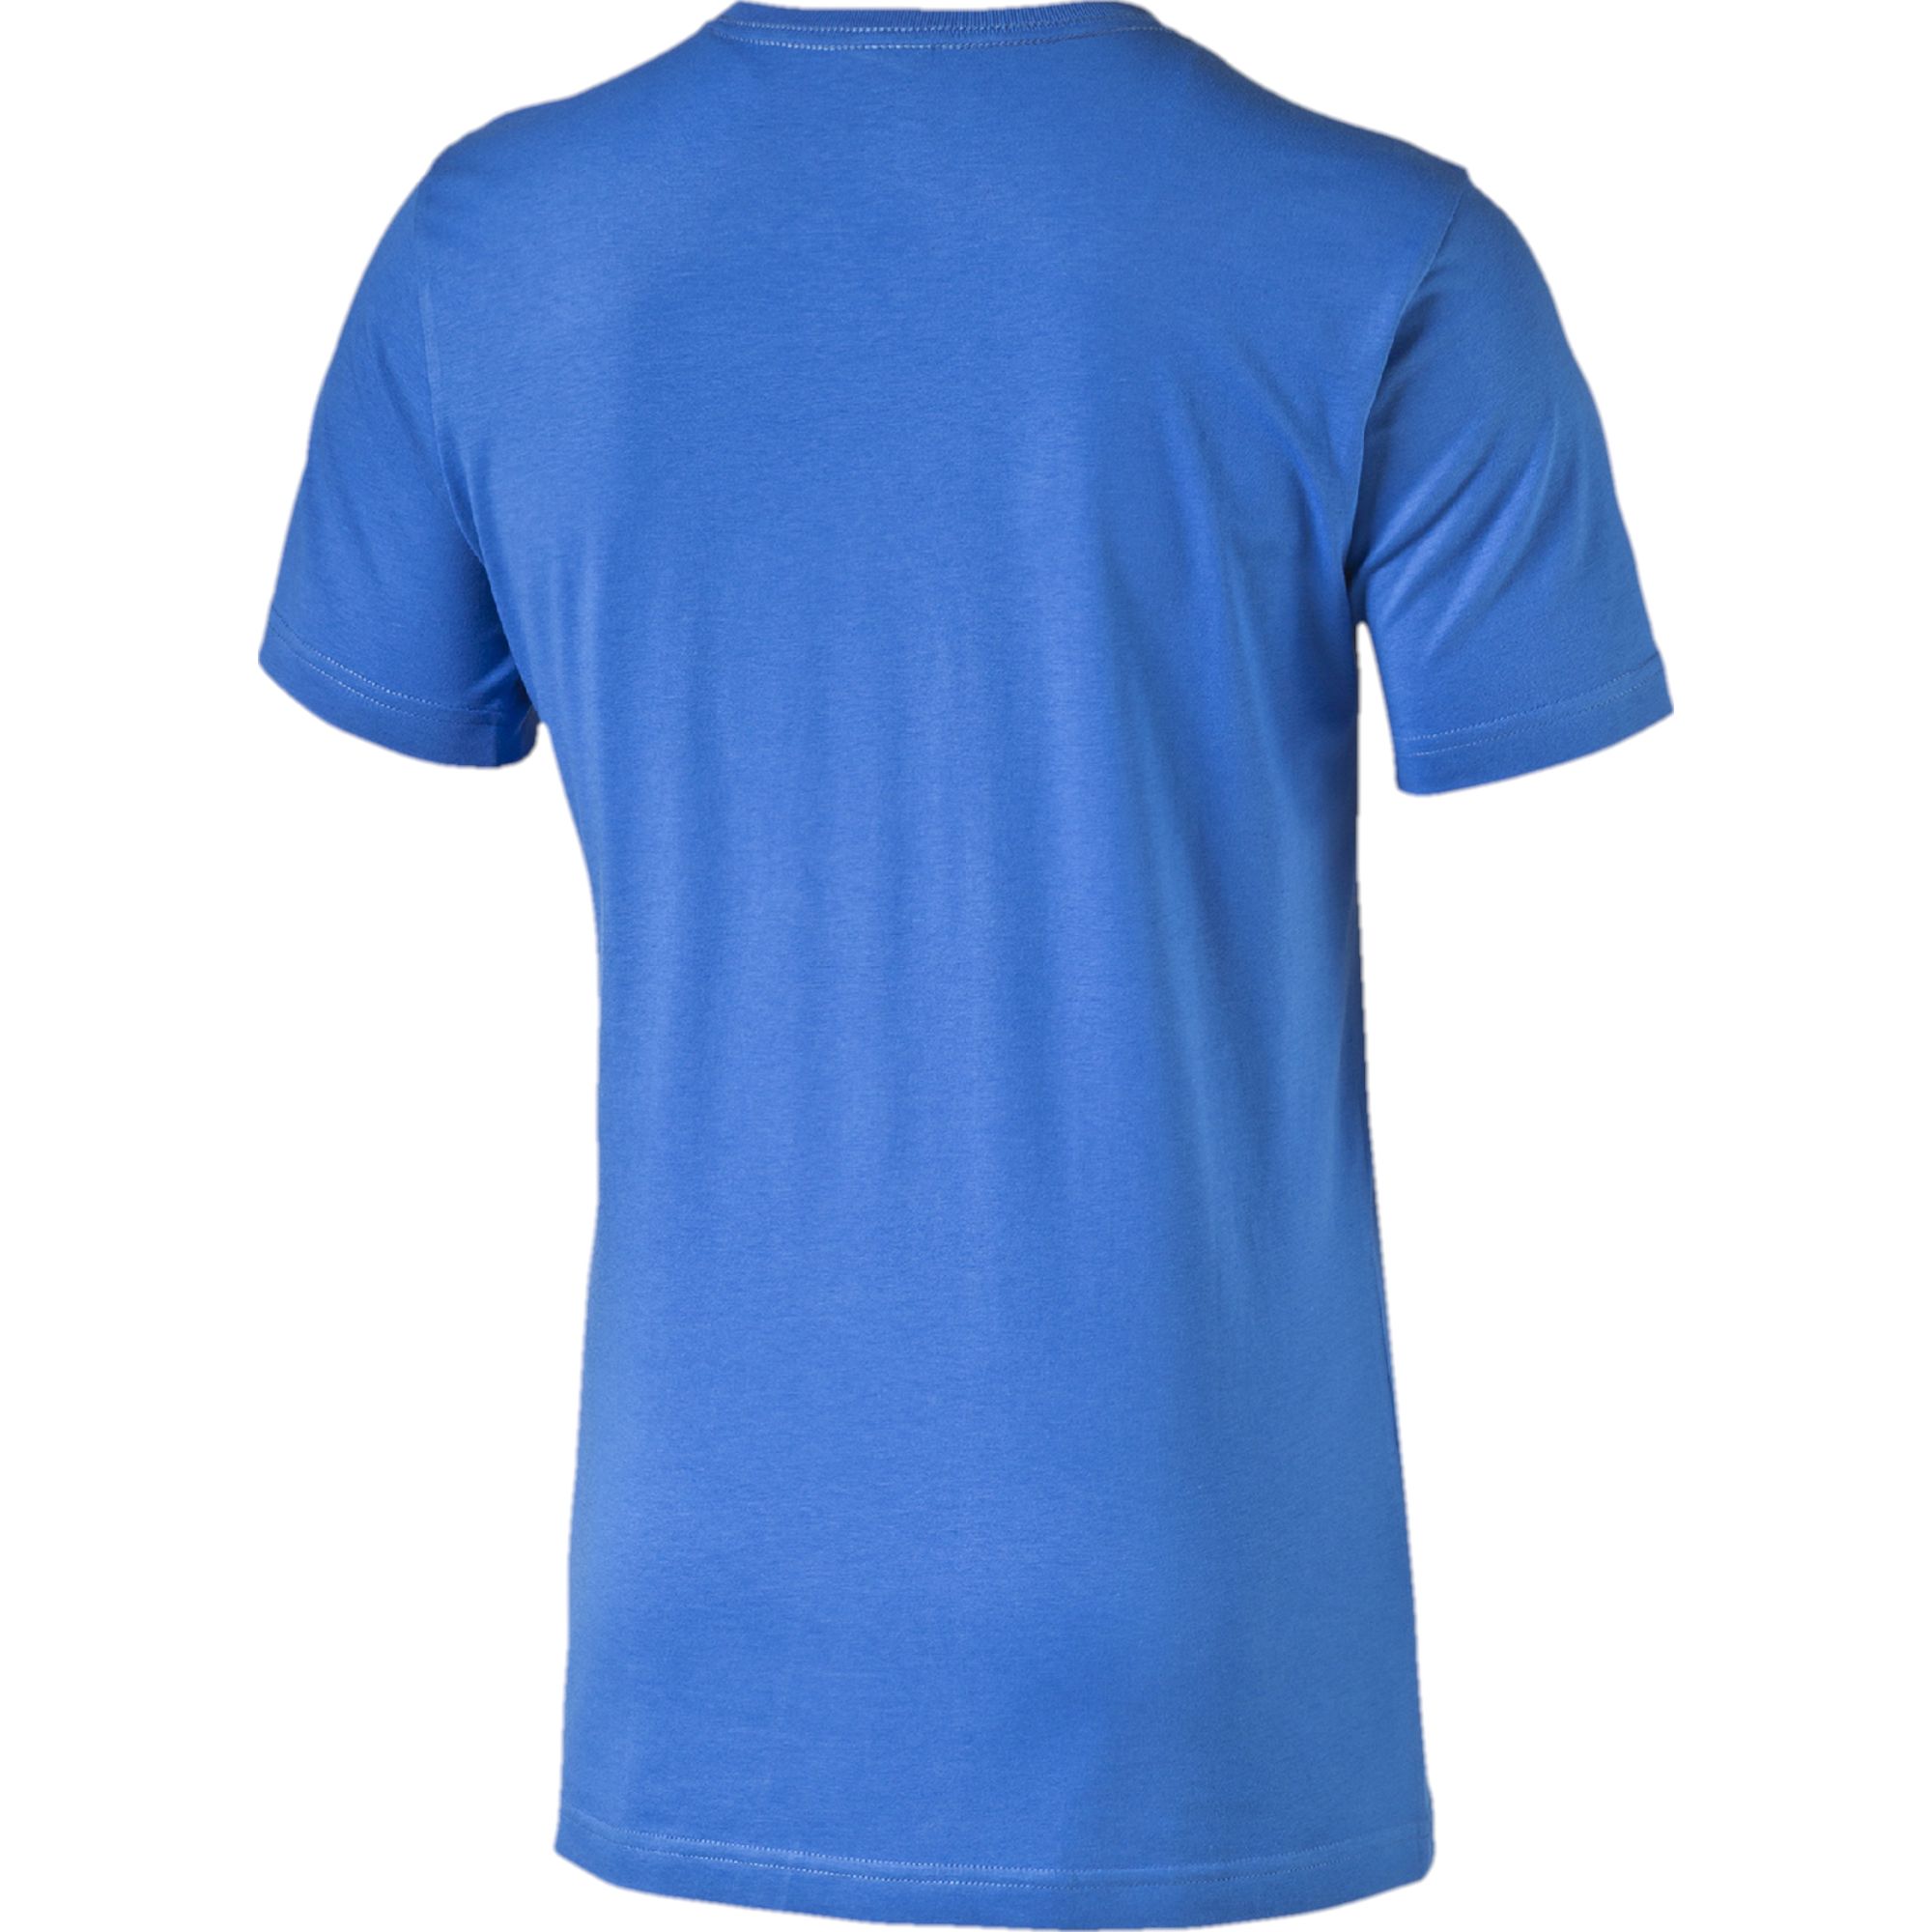 PUMA Boris Becker Graphic T-Shirt: Apparel T-Shirts Sport Classics Men New